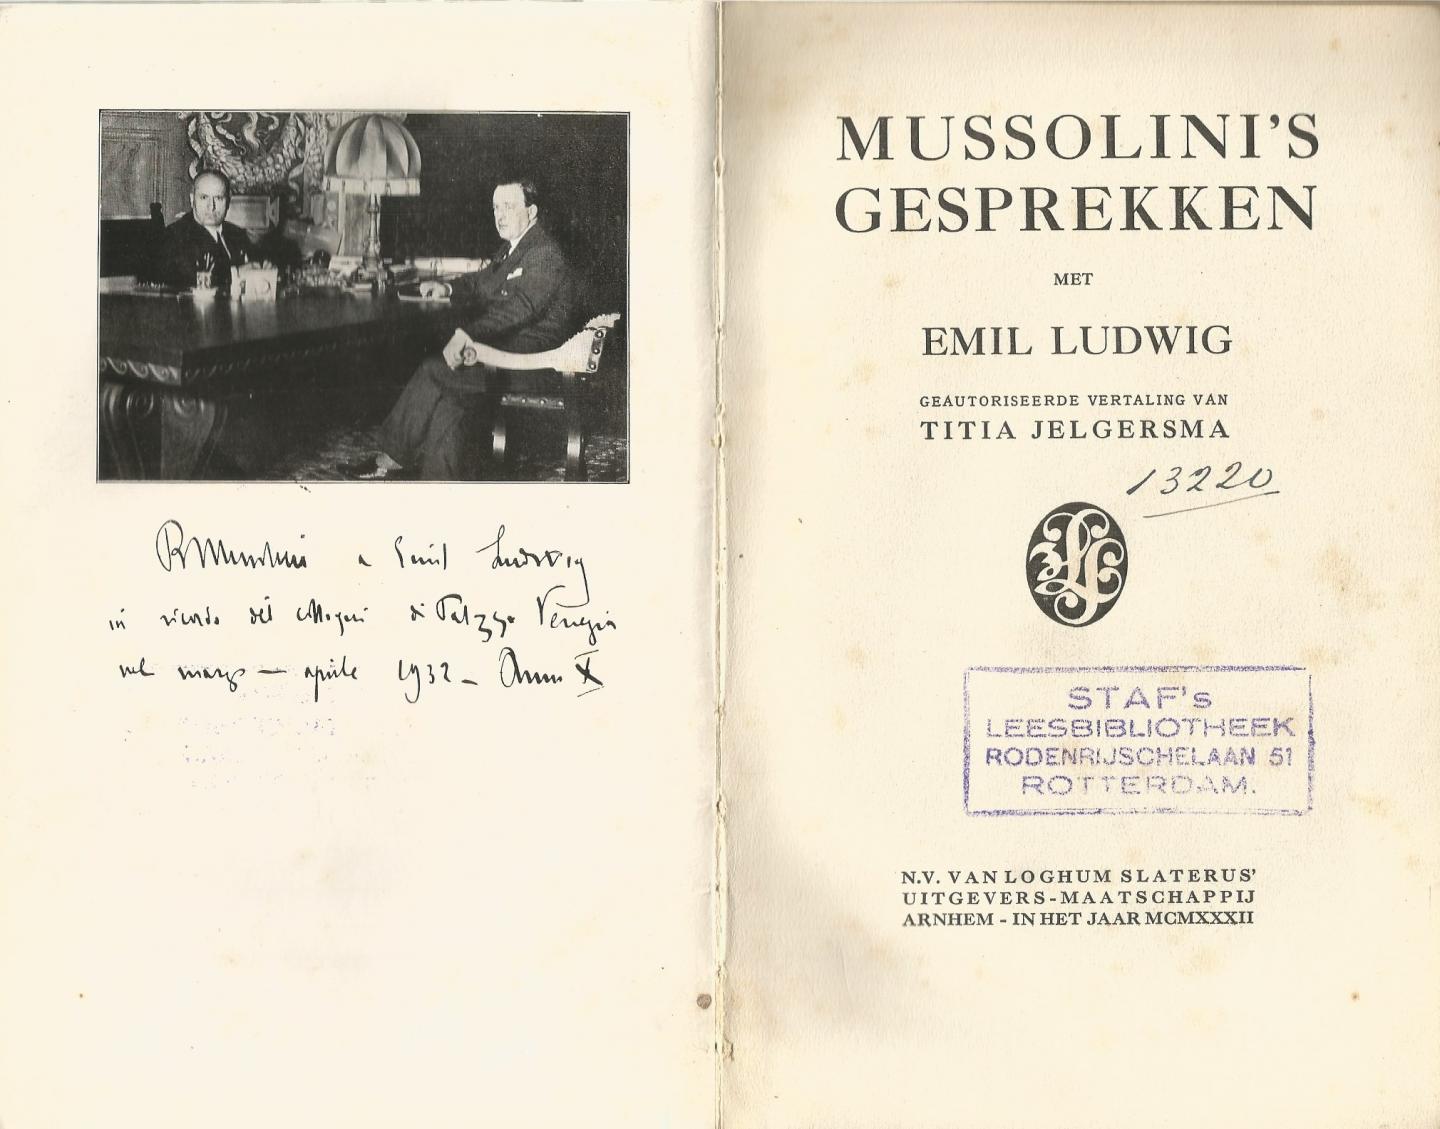 Emil Ludwig (gesprekken) geautoriseerd door TITIA JELGERSMA - MUSSOLINI'S GESPREKKEN